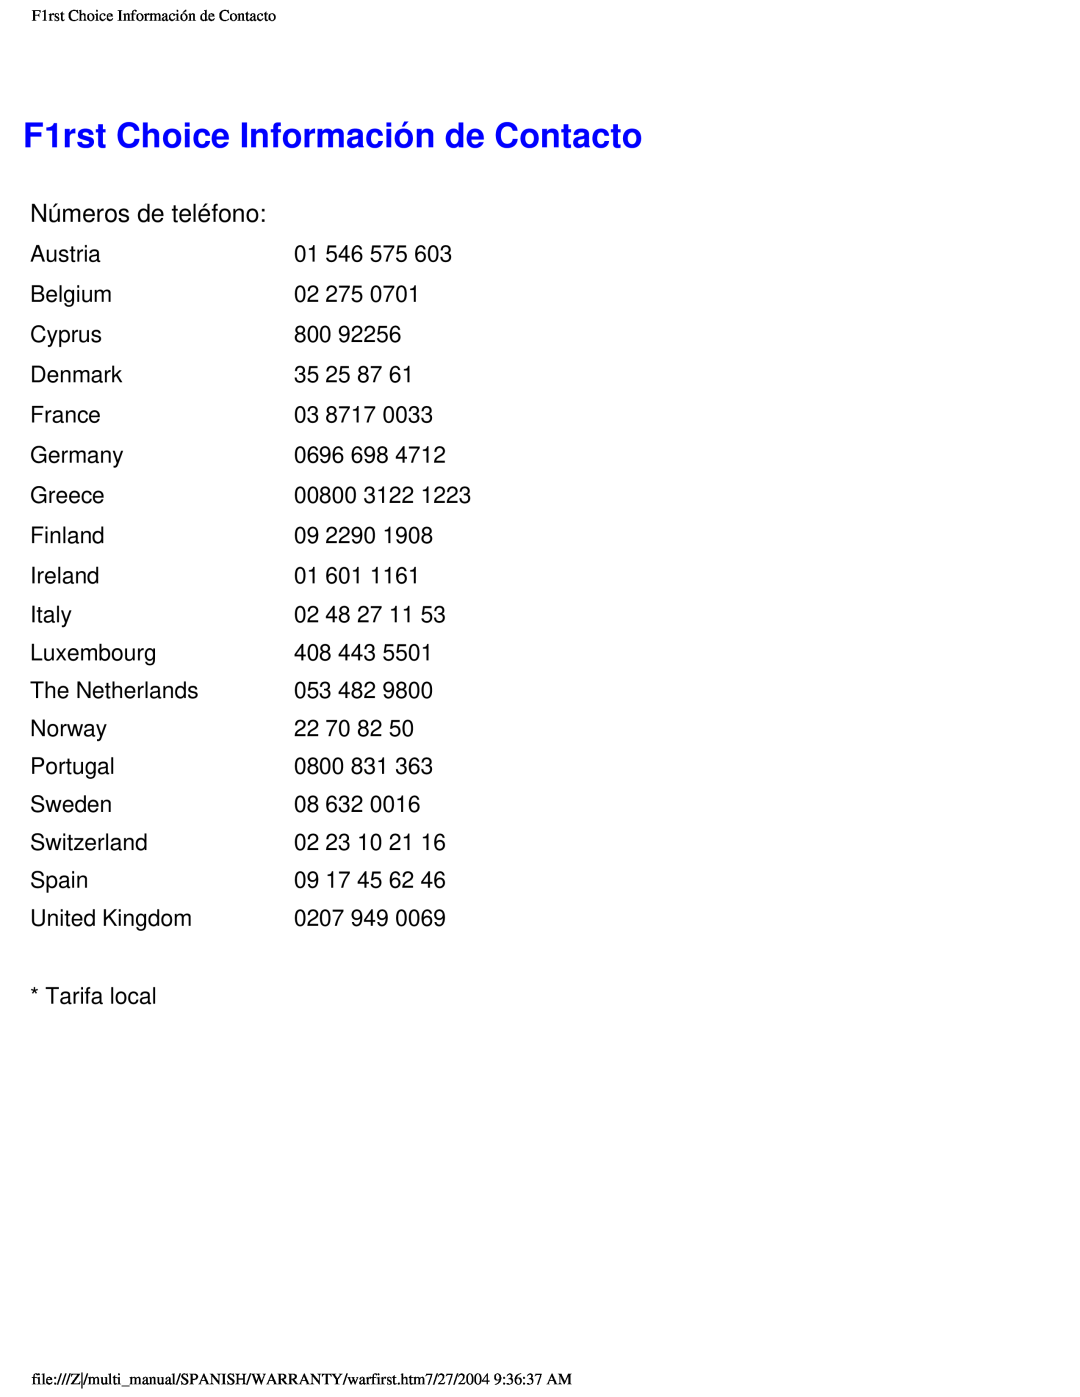 Philips 107B user manual F1rst Choice Información de Contacto, Números de teléfono 